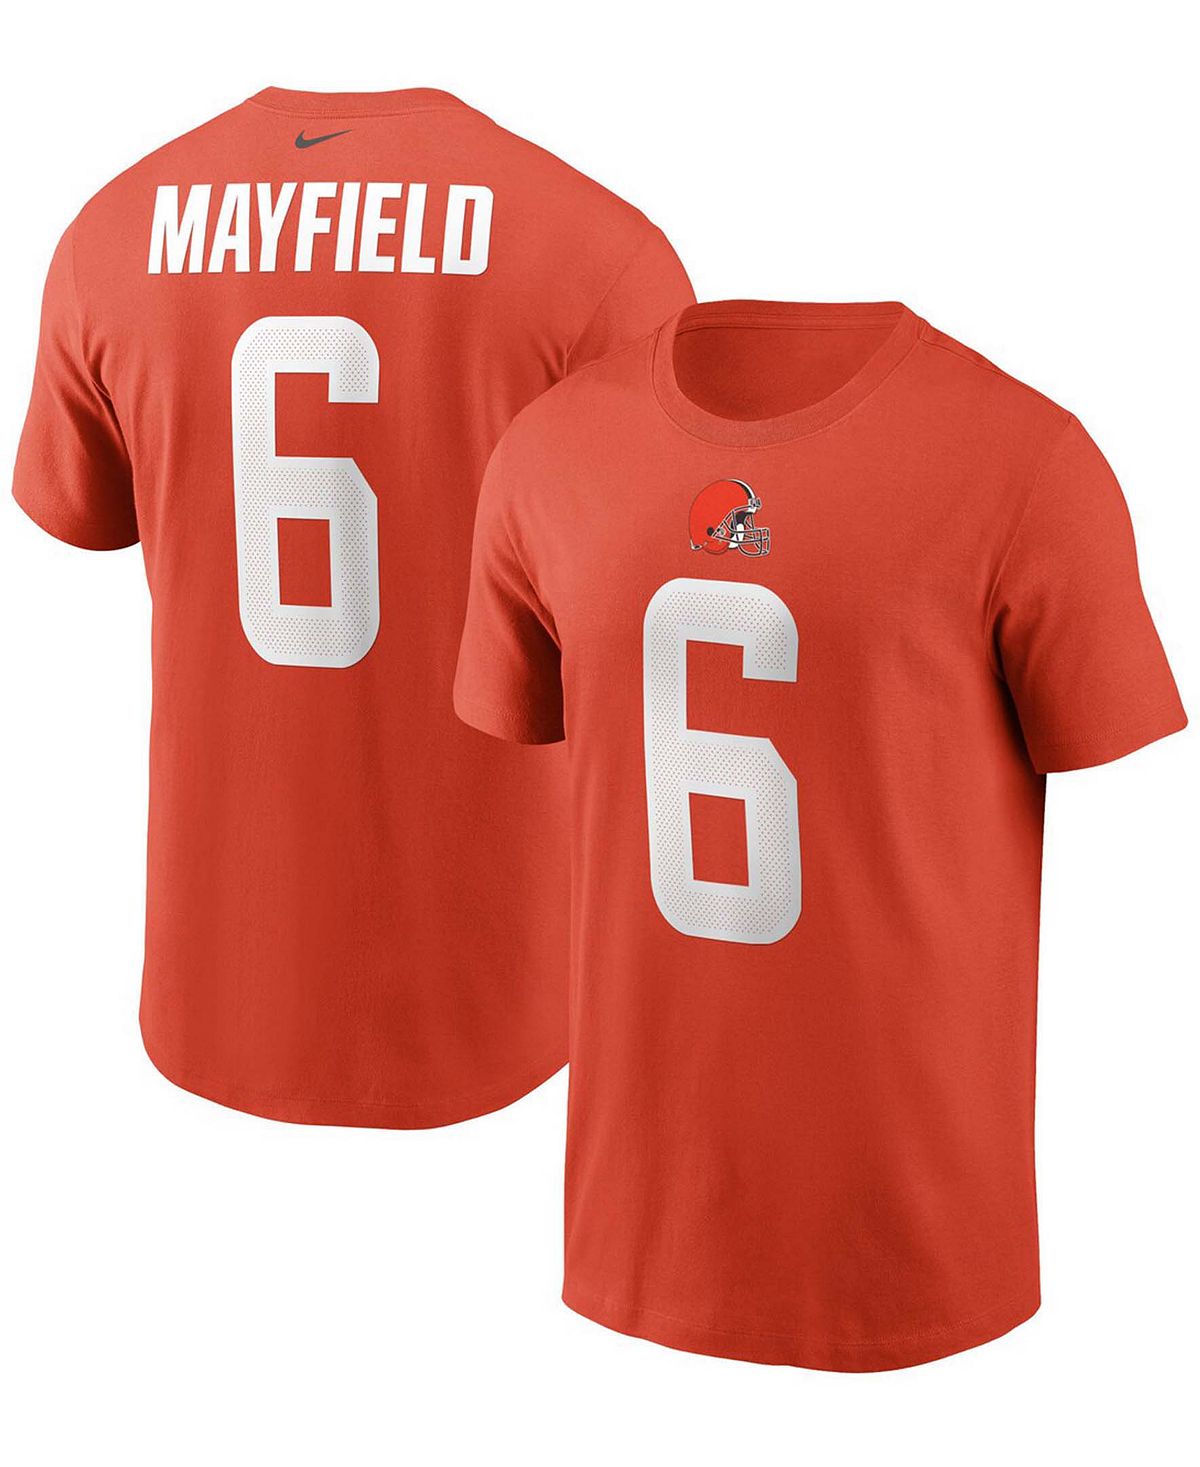 Мужская футболка Baker Mayfield Orange Cleveland Browns с именем и номером Nike торт бисквитный фили бейкер любимый ключик 1 кг